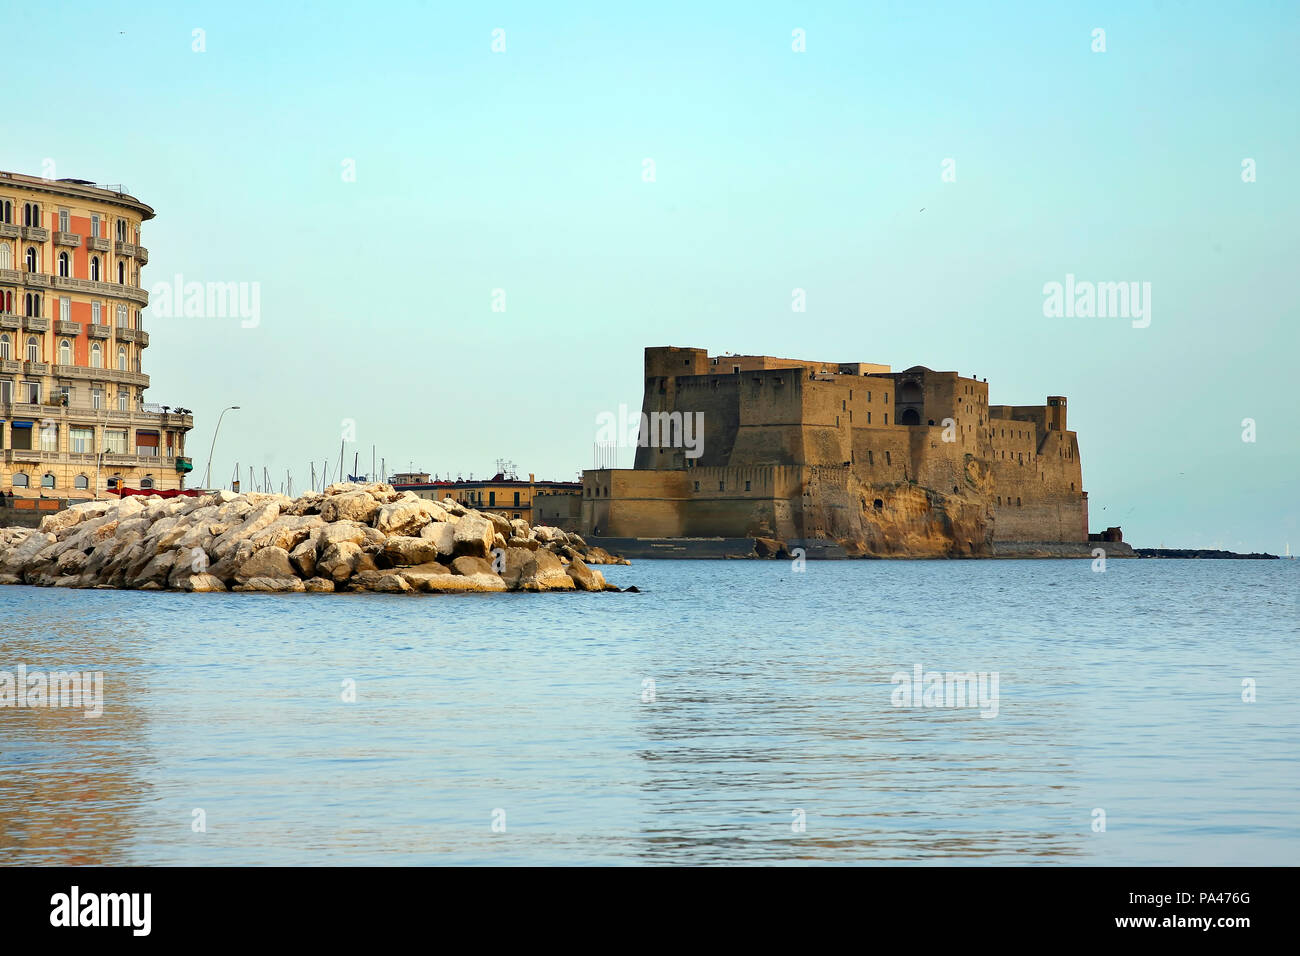 Ei Schloss eine mittelalterliche Festung in der Bucht von Neapel, Italien Stockfoto